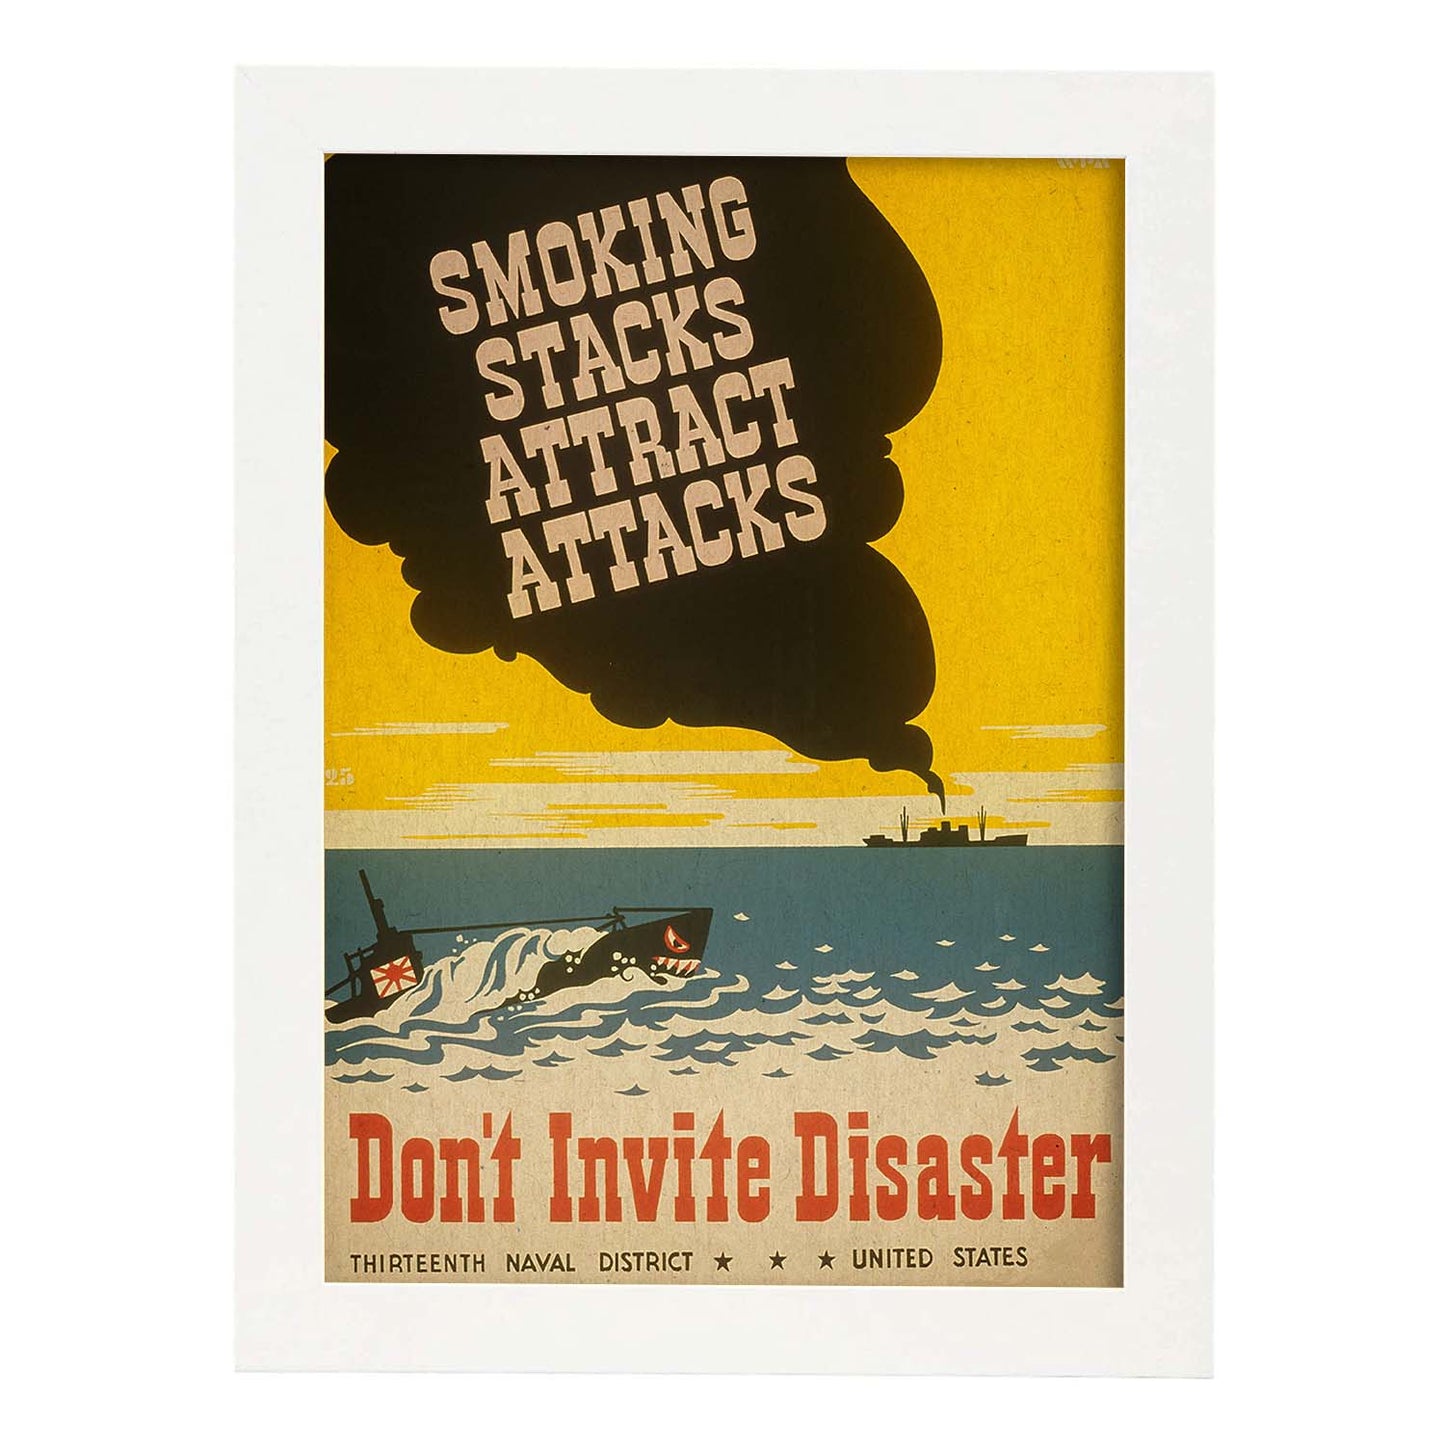 Poster vintage. Cartel vintage del distrito naval de Estados Unidos. " Dont Invite Disaster".-Artwork-Nacnic-A4-Marco Blanco-Nacnic Estudio SL